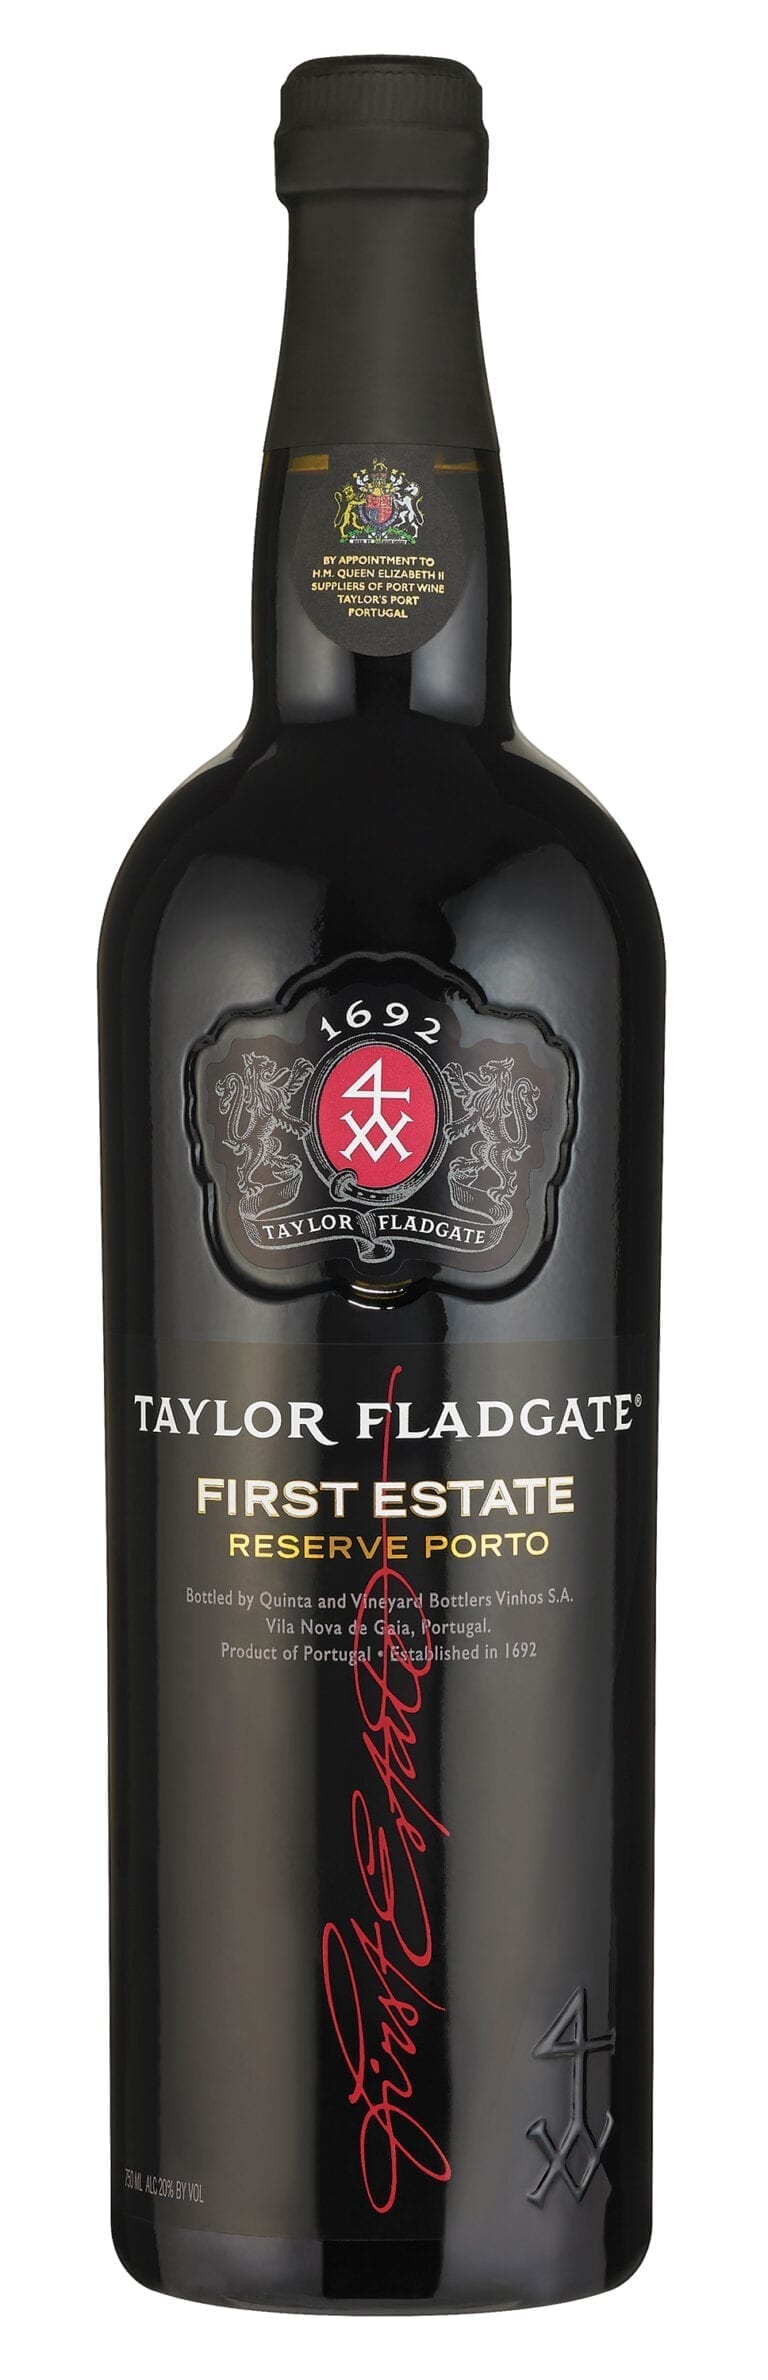 Taylor Fladgate First Estate Reserve Porto